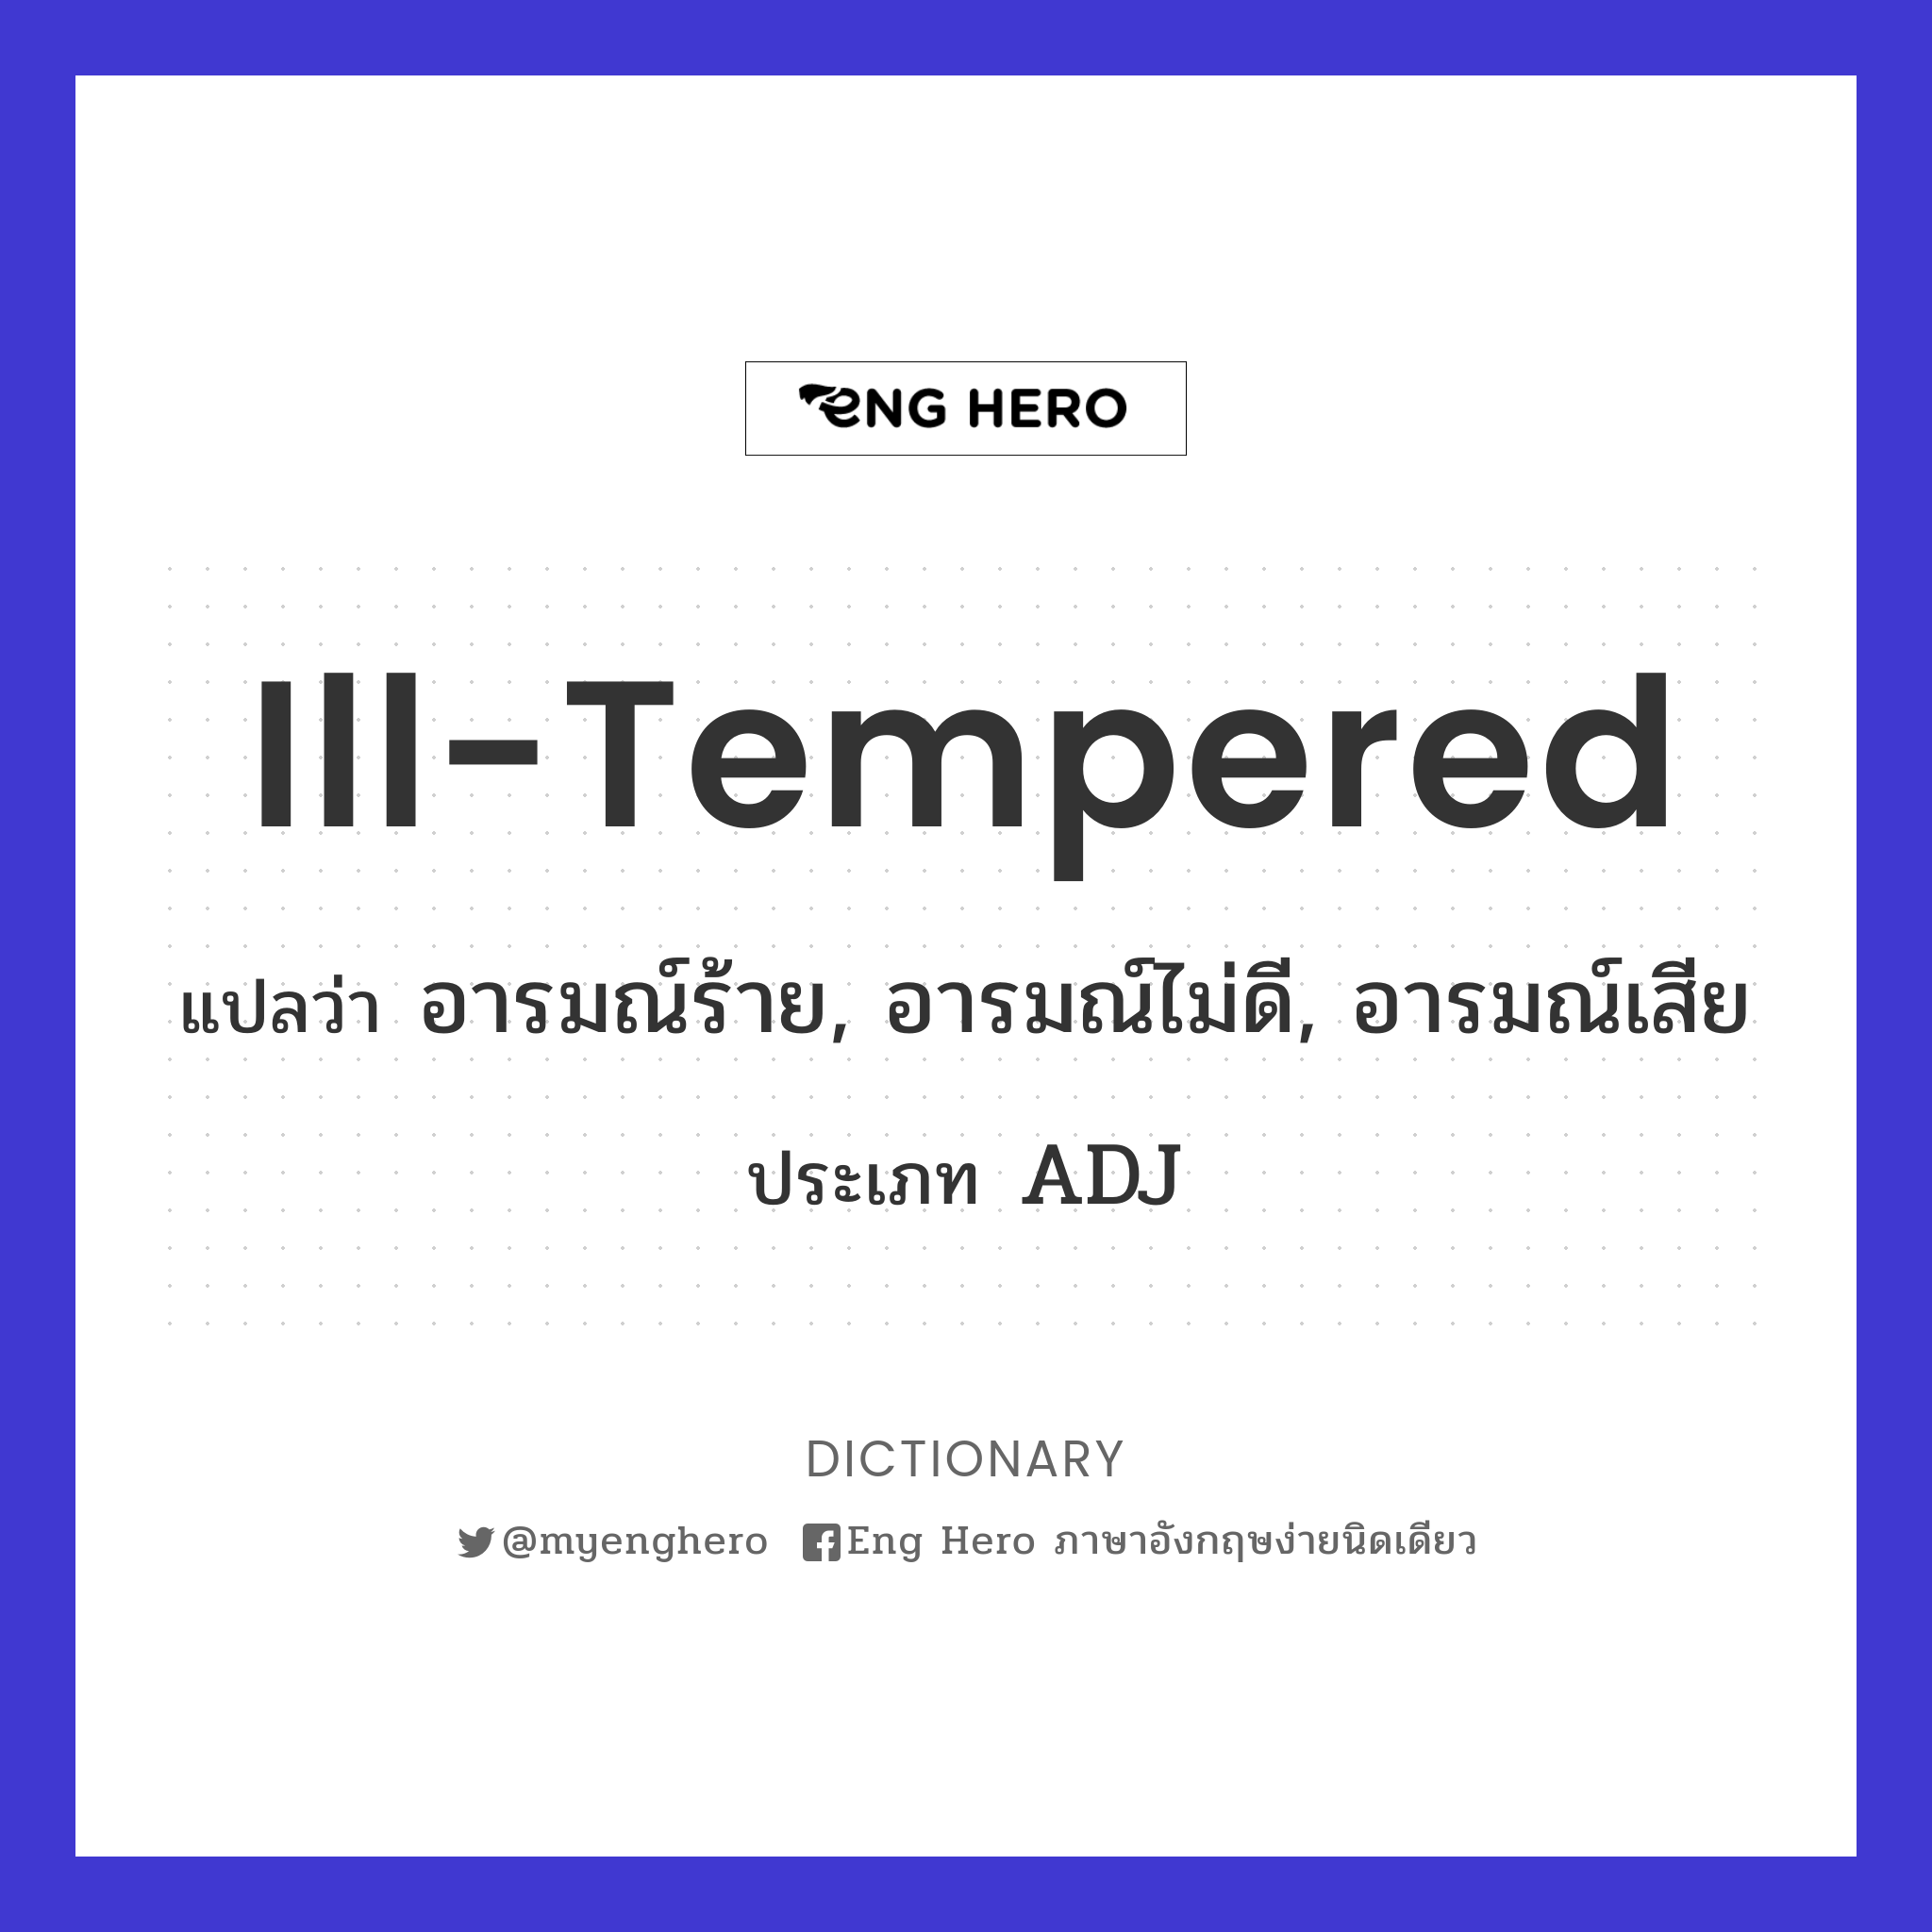 ill-tempered